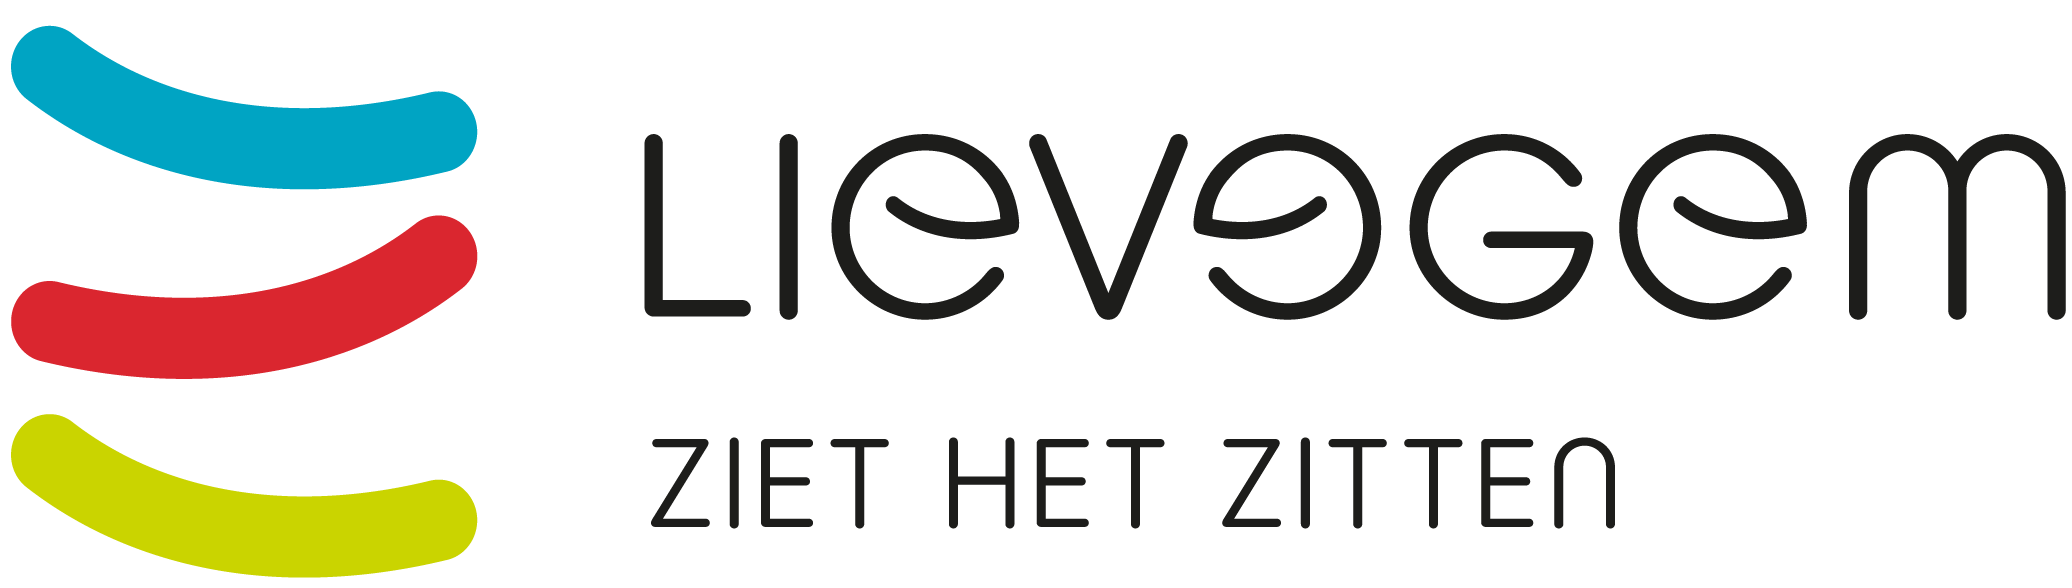 Logo Gemeentebestuur Lievegem